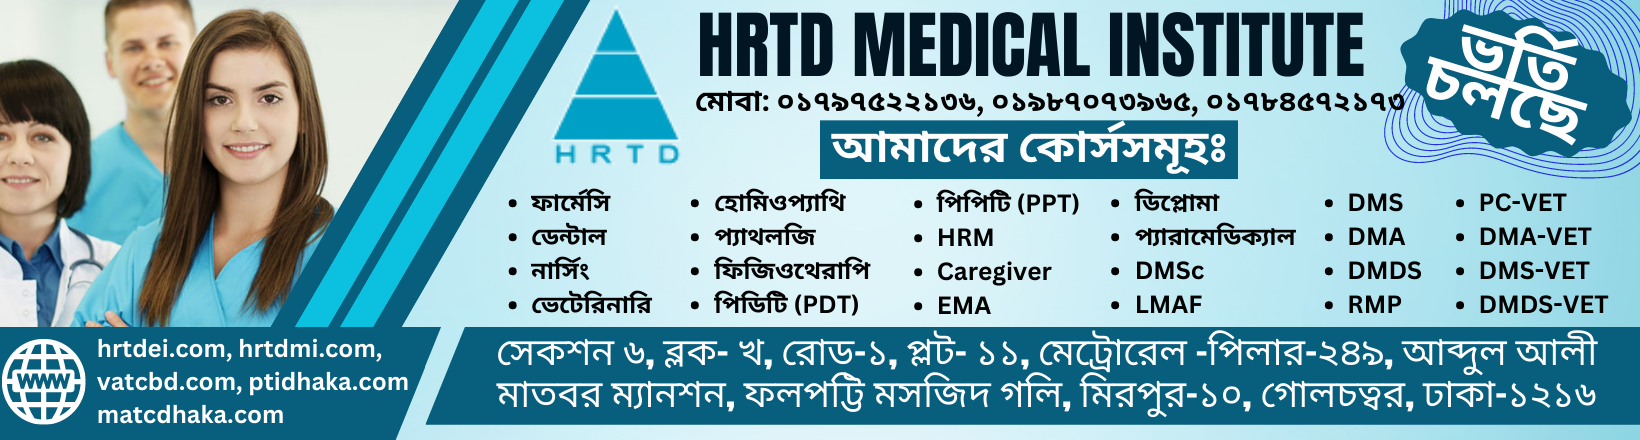 HRTD Medical Institute